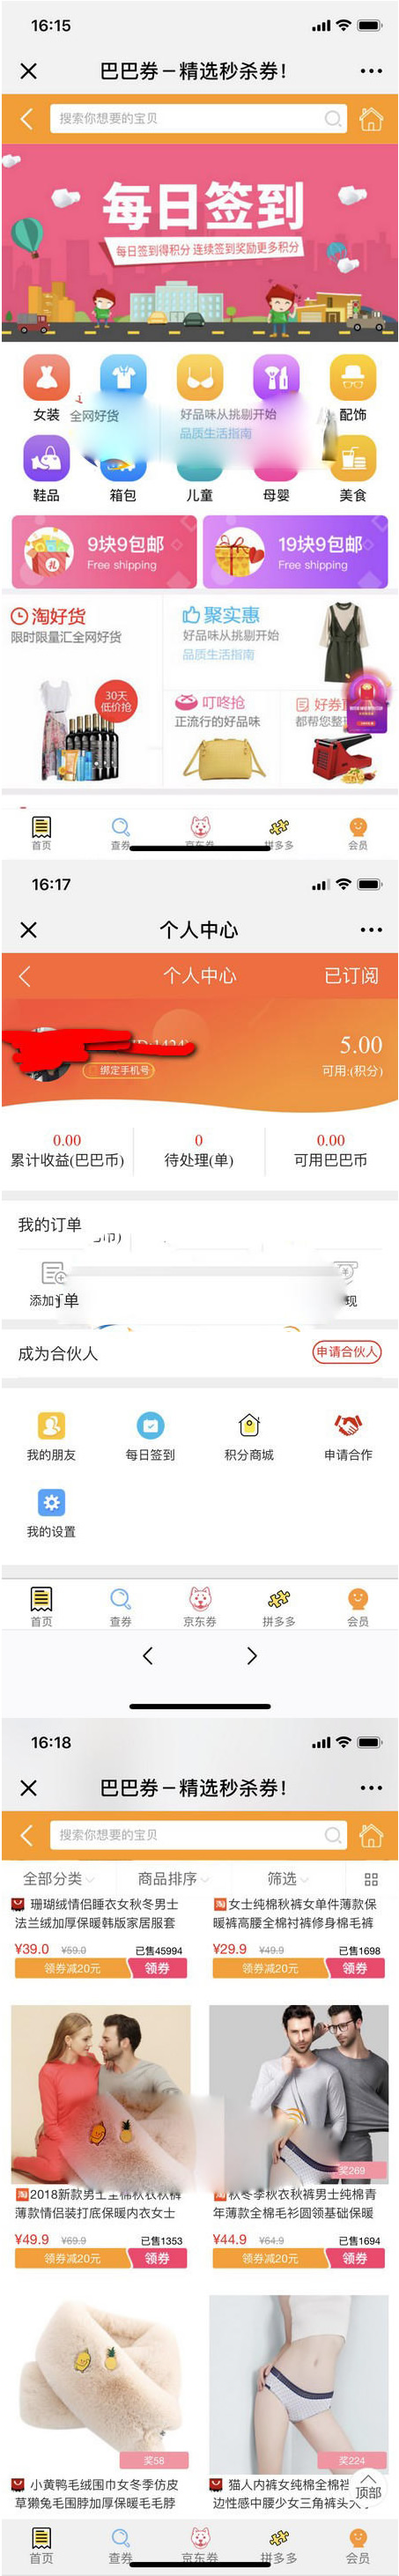 【公众号应用】老虎微信淘宝客V6.0.55 高级版 增加新的饿了么页面